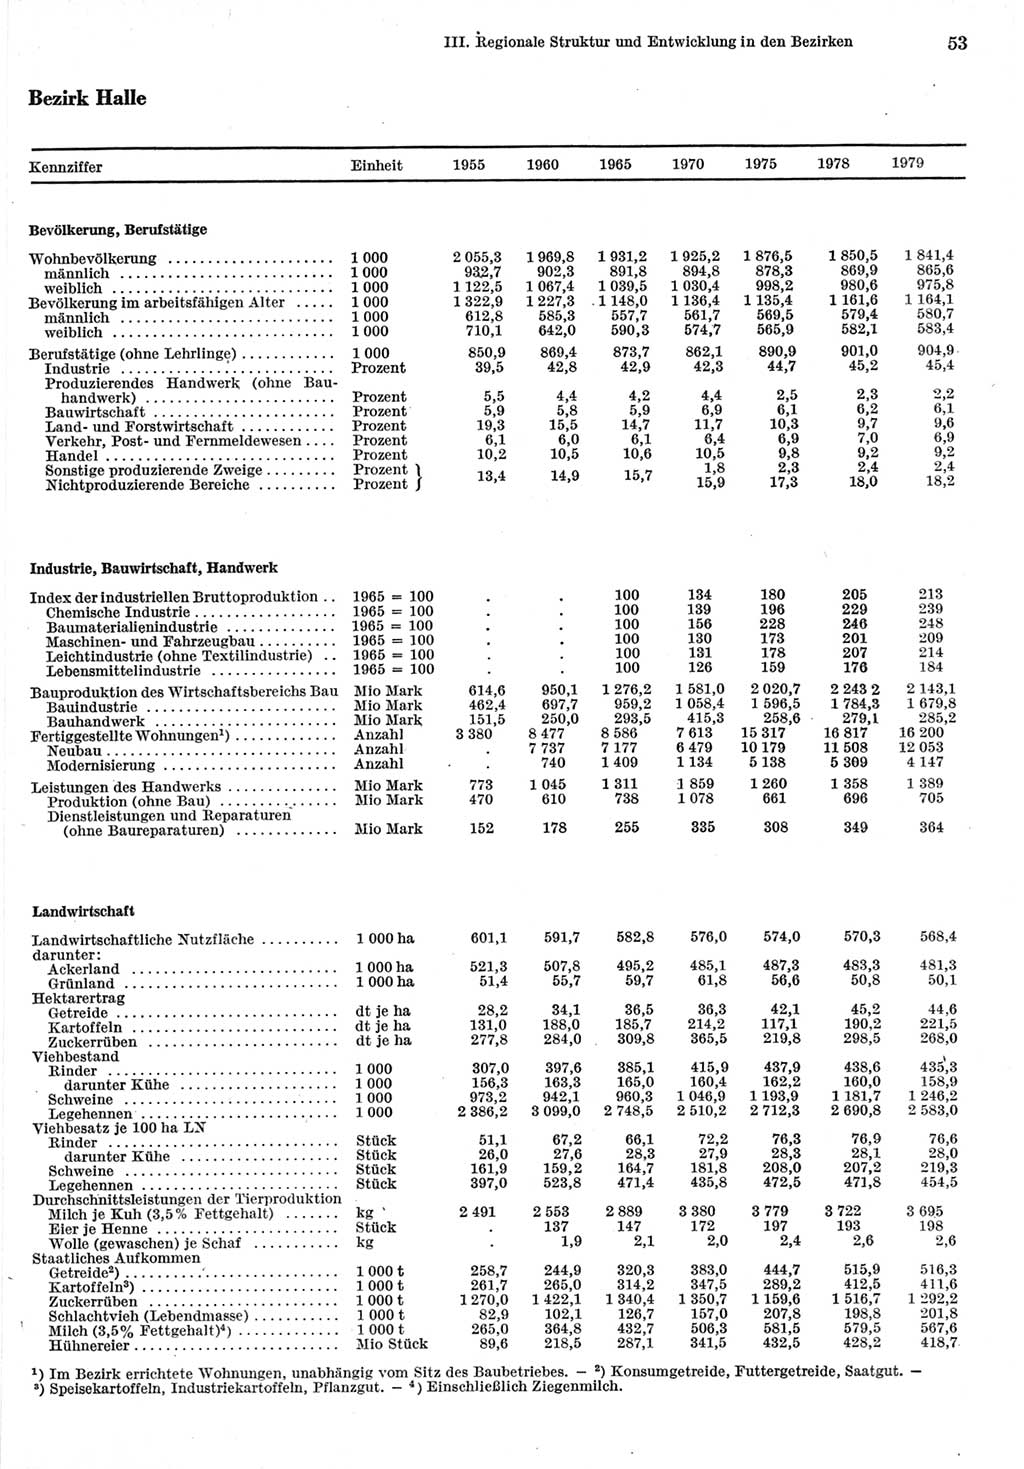 Statistisches Jahrbuch der Deutschen Demokratischen Republik (DDR) 1980, Seite 53 (Stat. Jb. DDR 1980, S. 53)